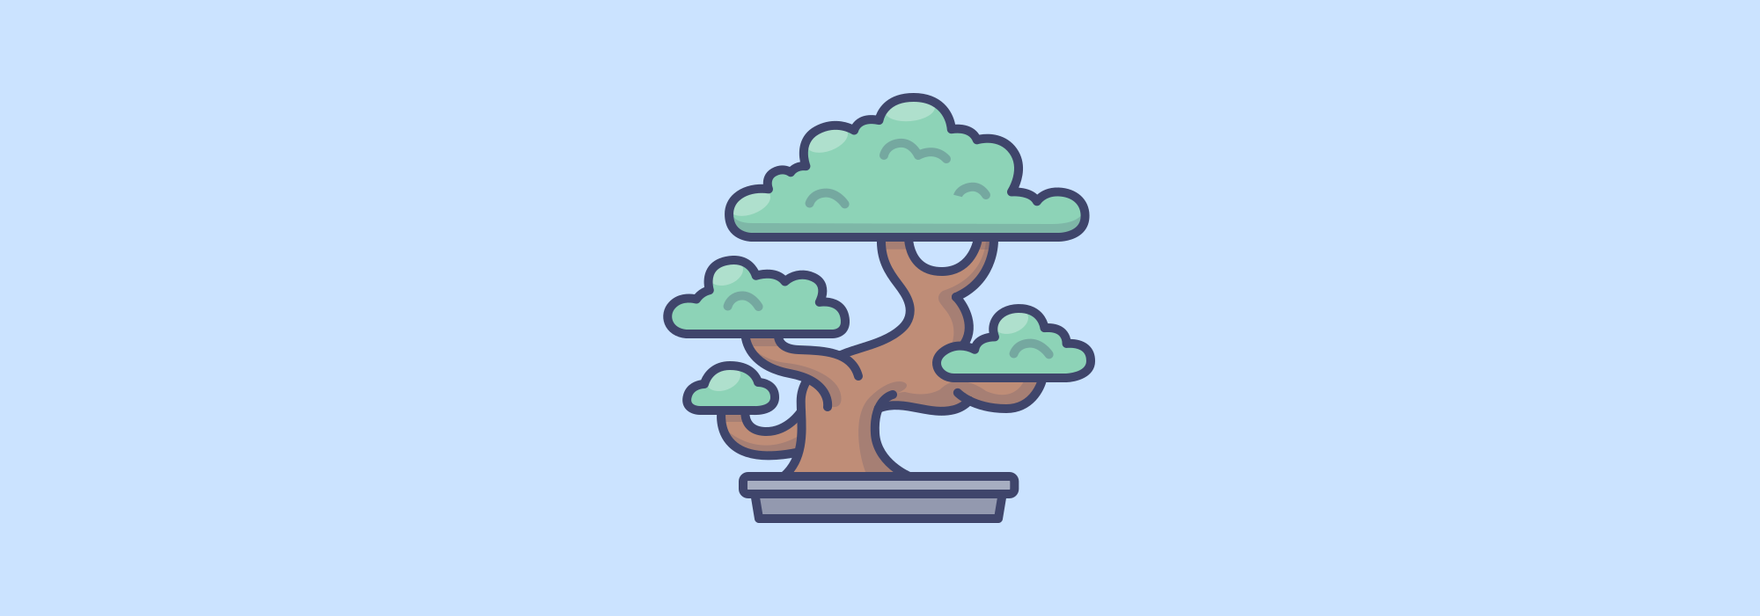 Двоичное (бинарное) дерево: удаление элемента и скорость работы